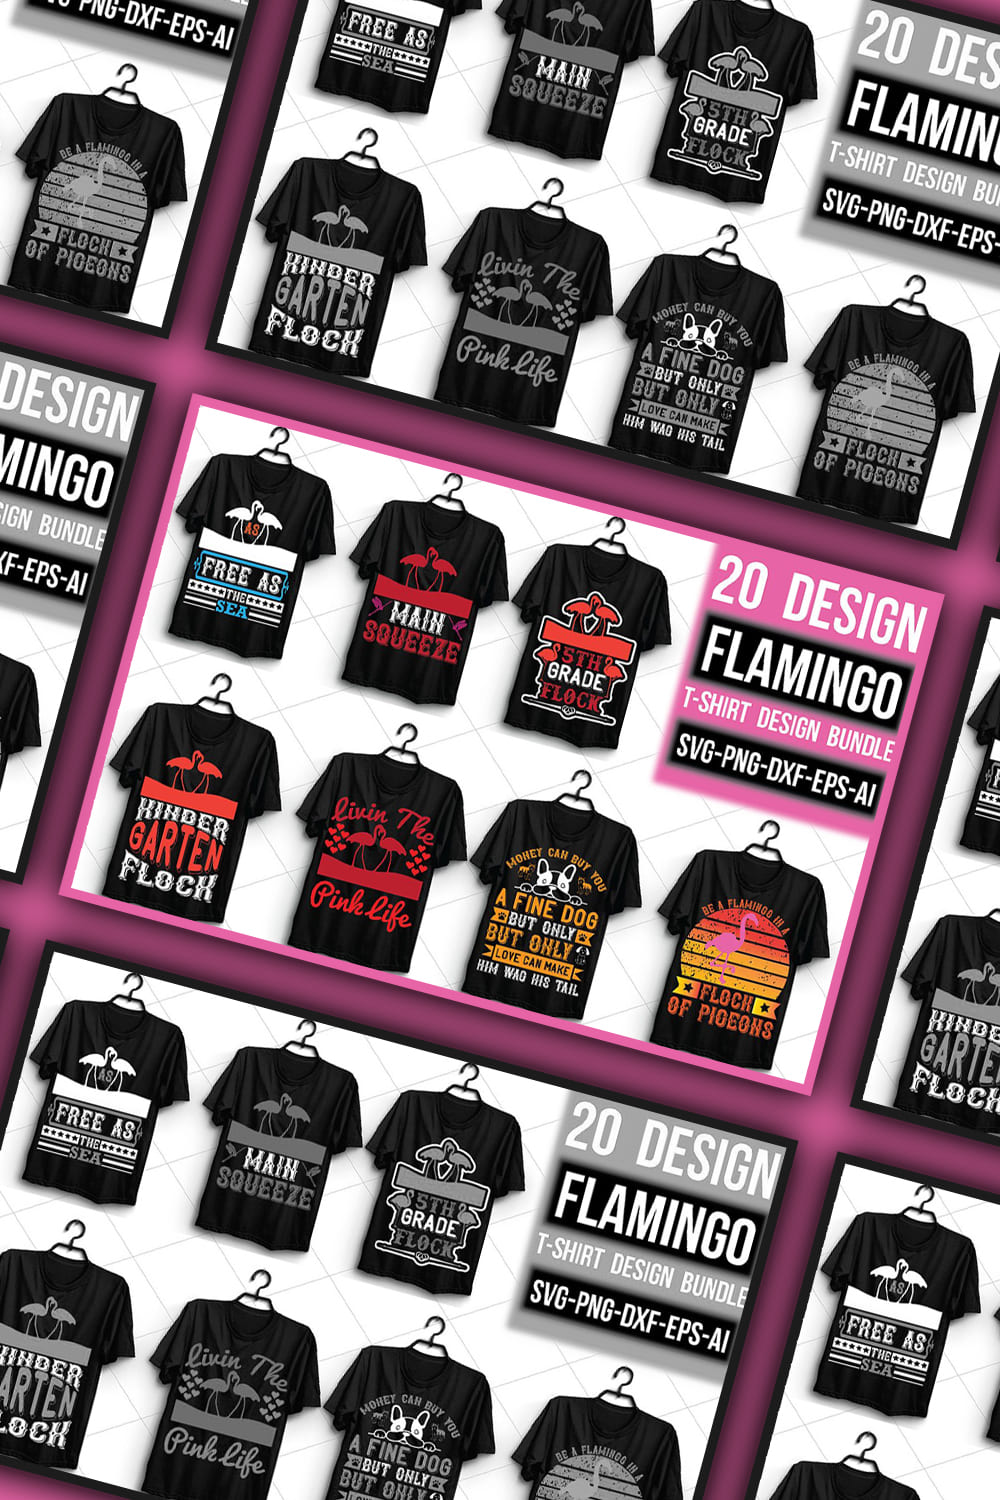 Flamingo T-shirt Design Bundle - pinterest image preview.